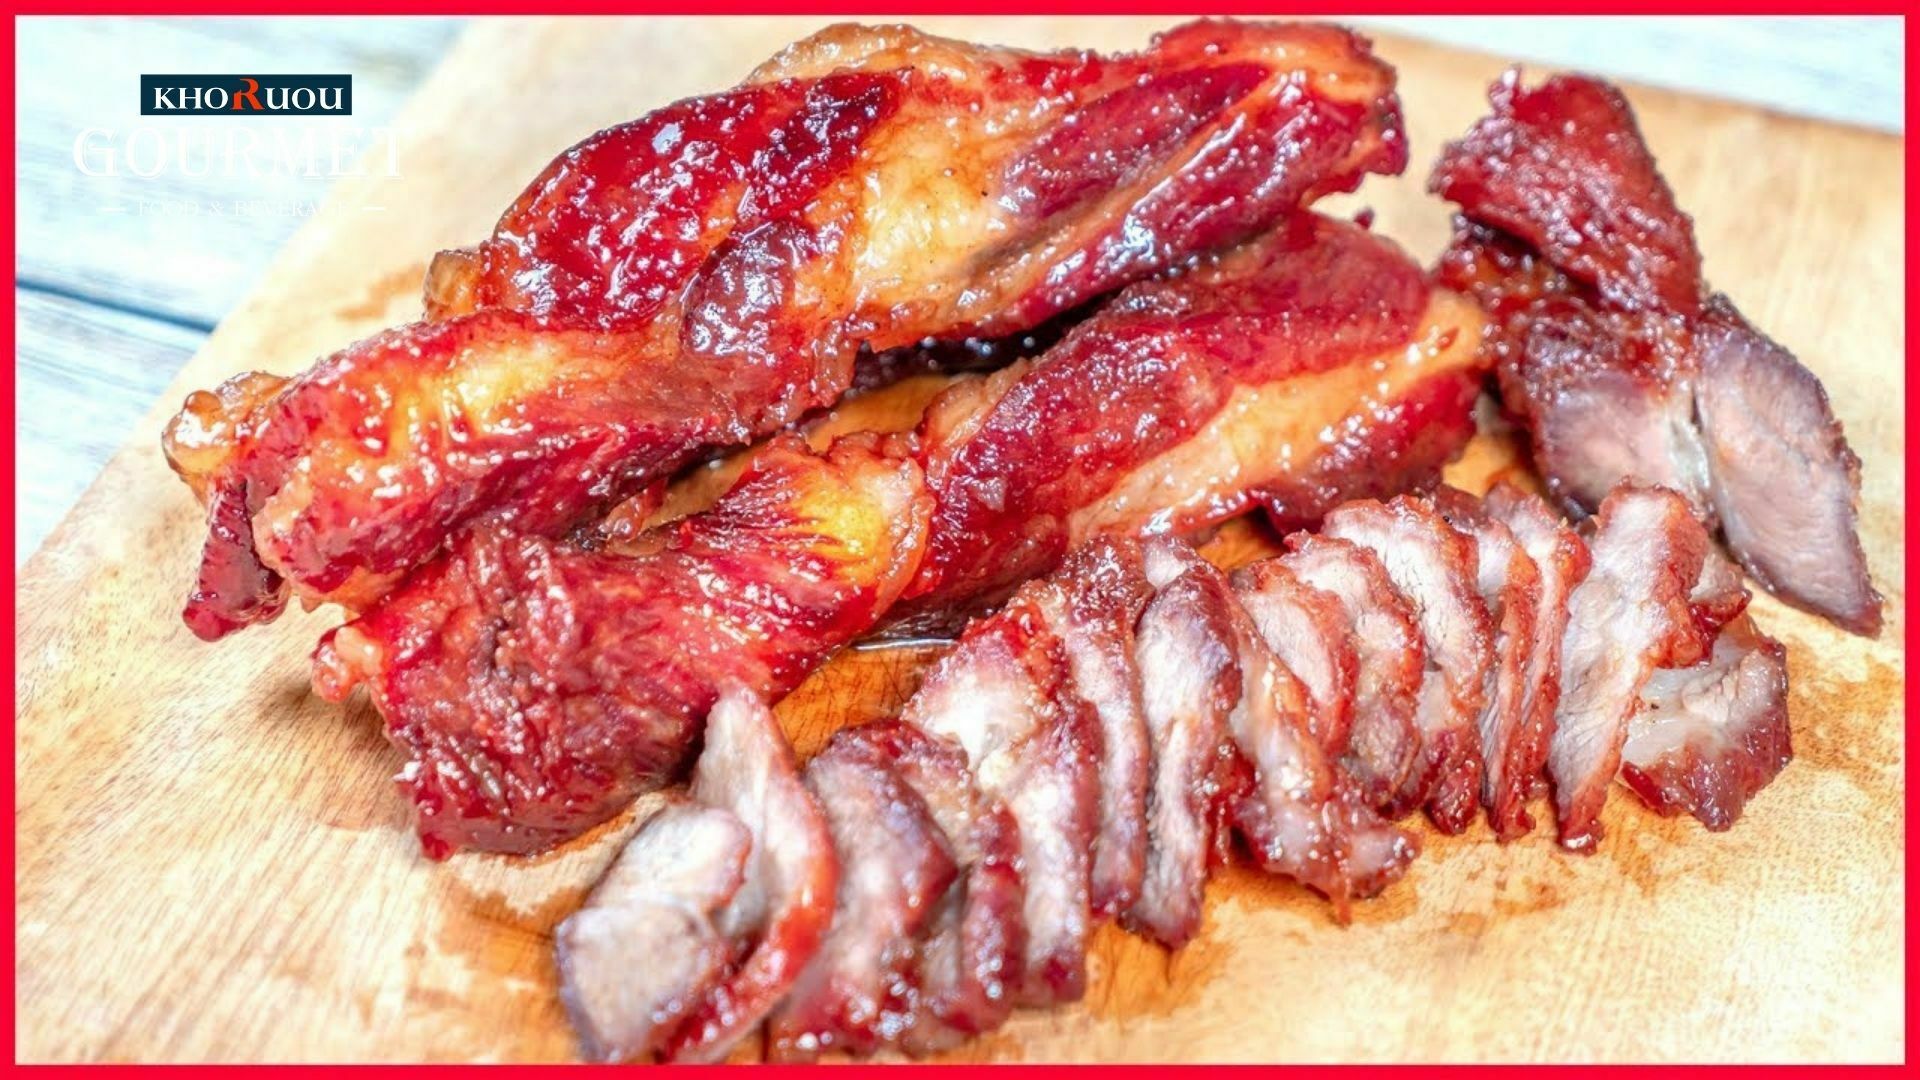 Thịt lợn xá xíu được tẩm vị theo công thức gia truyền khá vừa ăn, có màu đỏ tươi bên trong, nâu đậm bên ngoài.